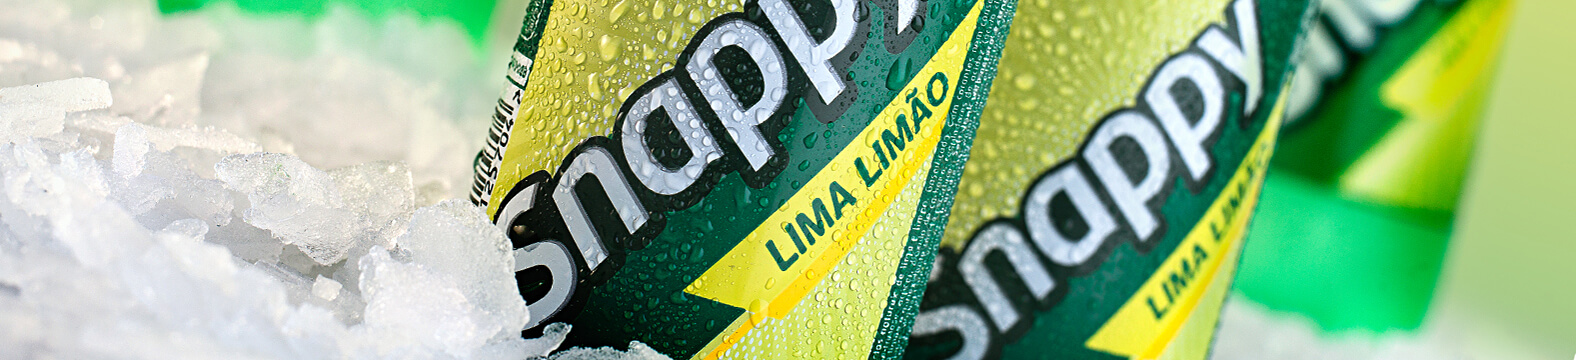 Ptop_Snappy Cola e Lima Limão